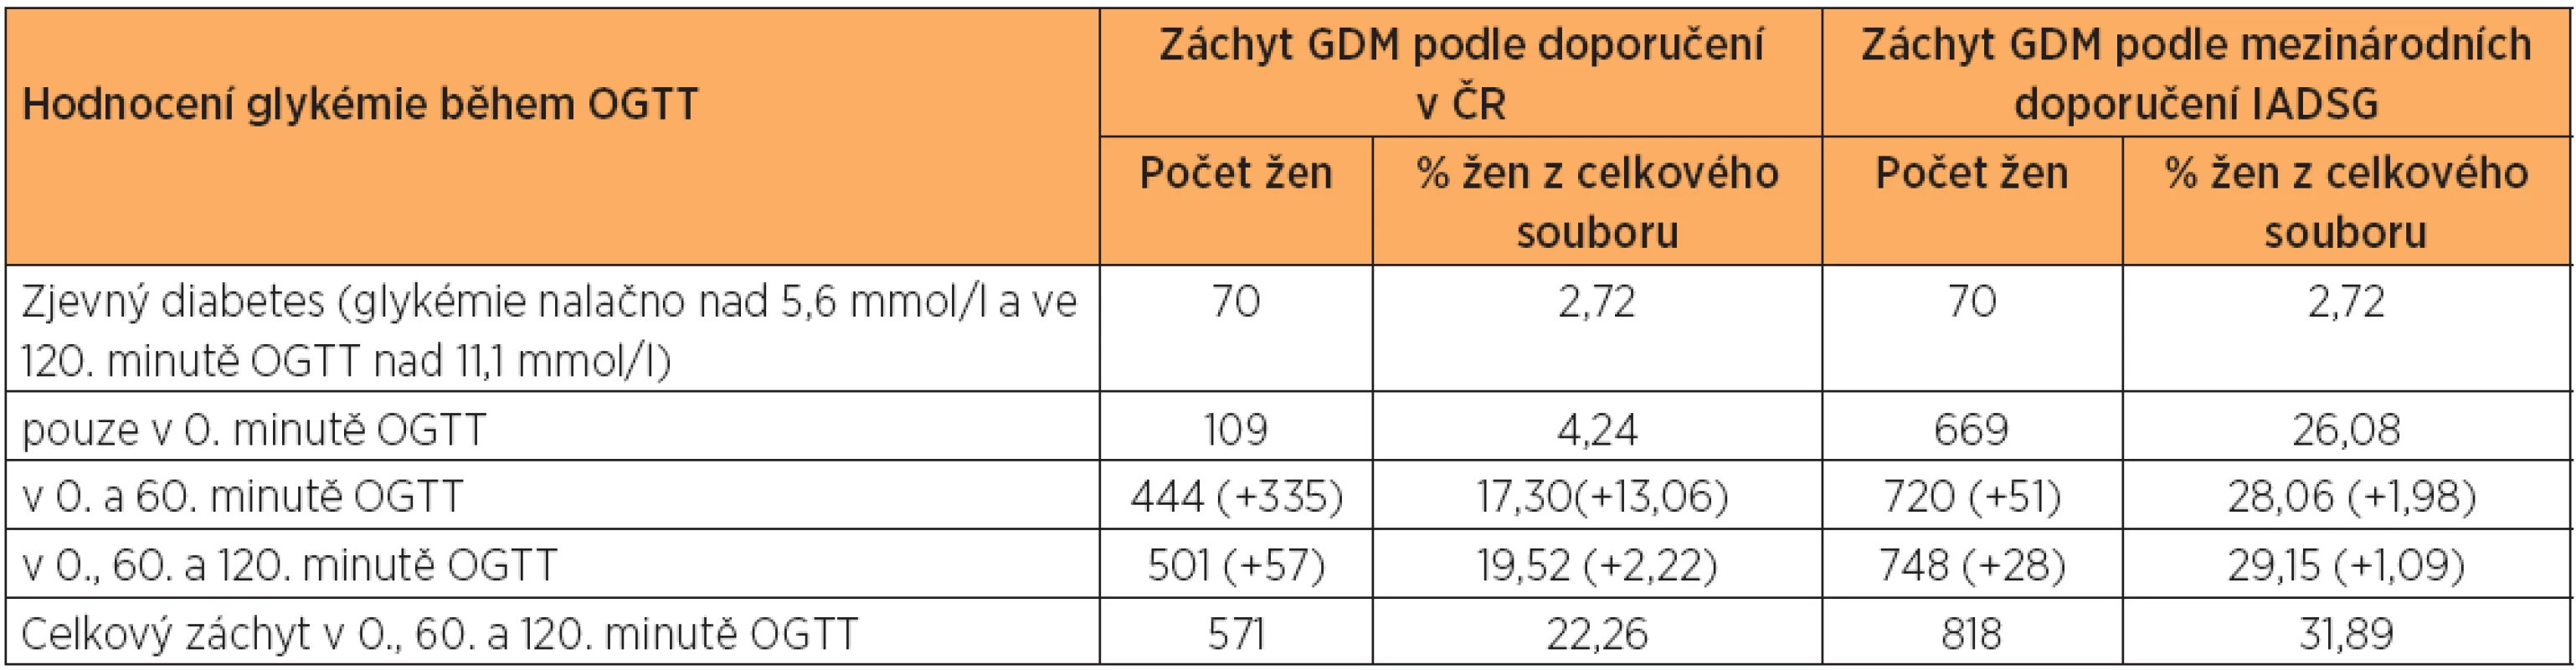 Záchyt GDM v 0. minutě OGTT, po přidání hodnocení glykémie v 60. minutě OGTT a po přidání hodnocení glykémie ve 120. minutě OGTT podle dosud platných doporučení v ČR a podle IAPDSG